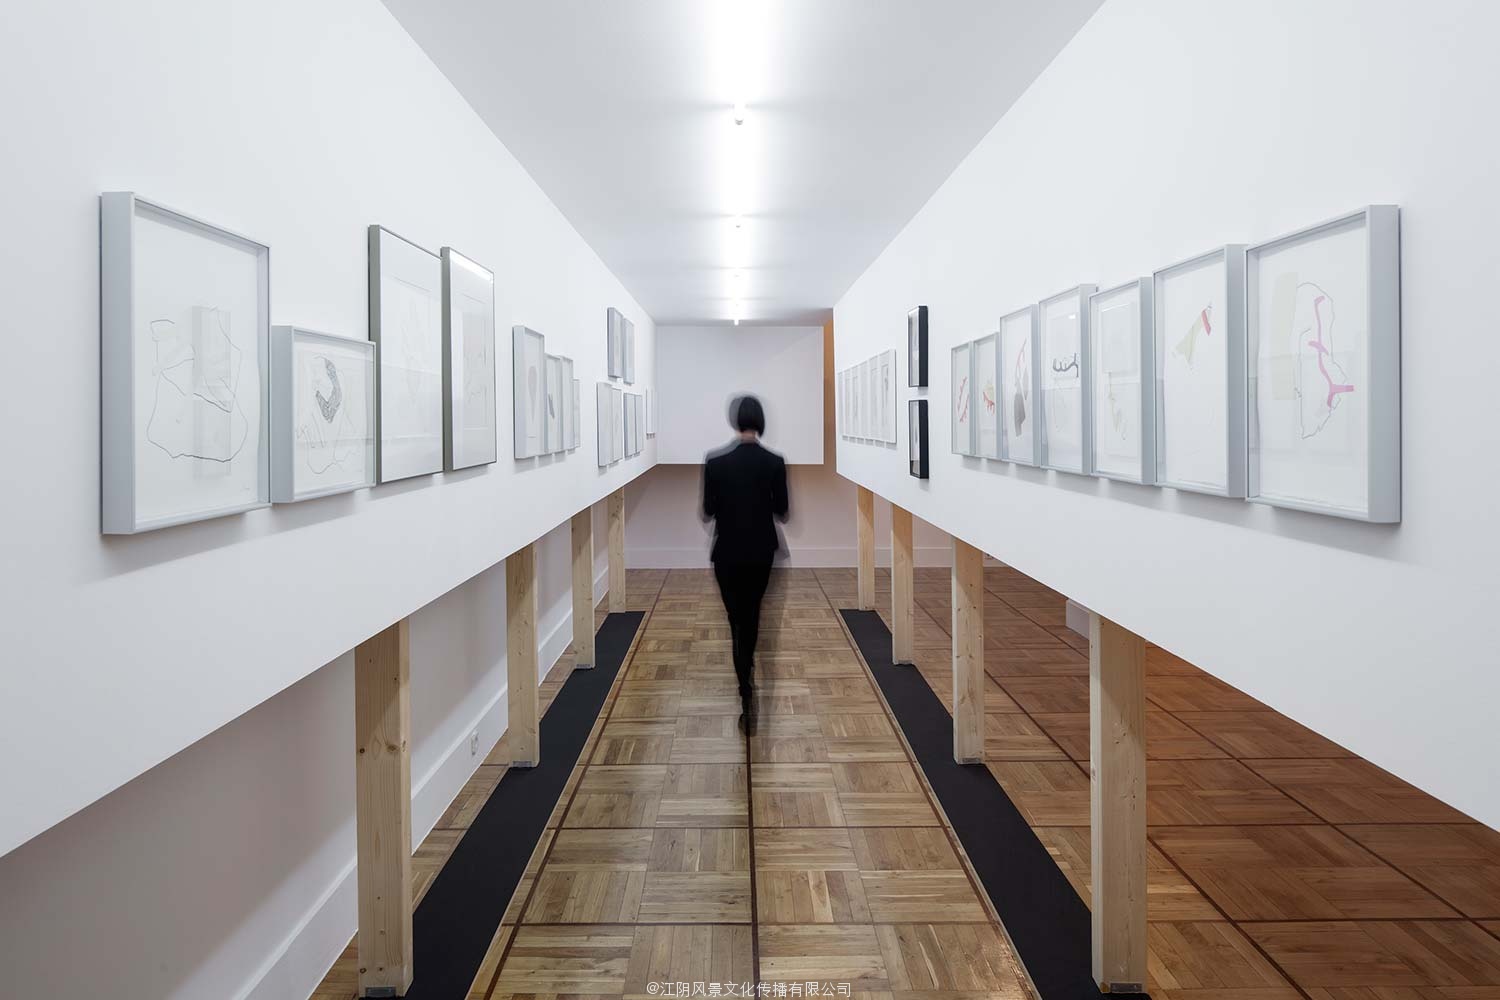 雕刻家苏珊娜 · 索拉诺博物馆展览空间布置